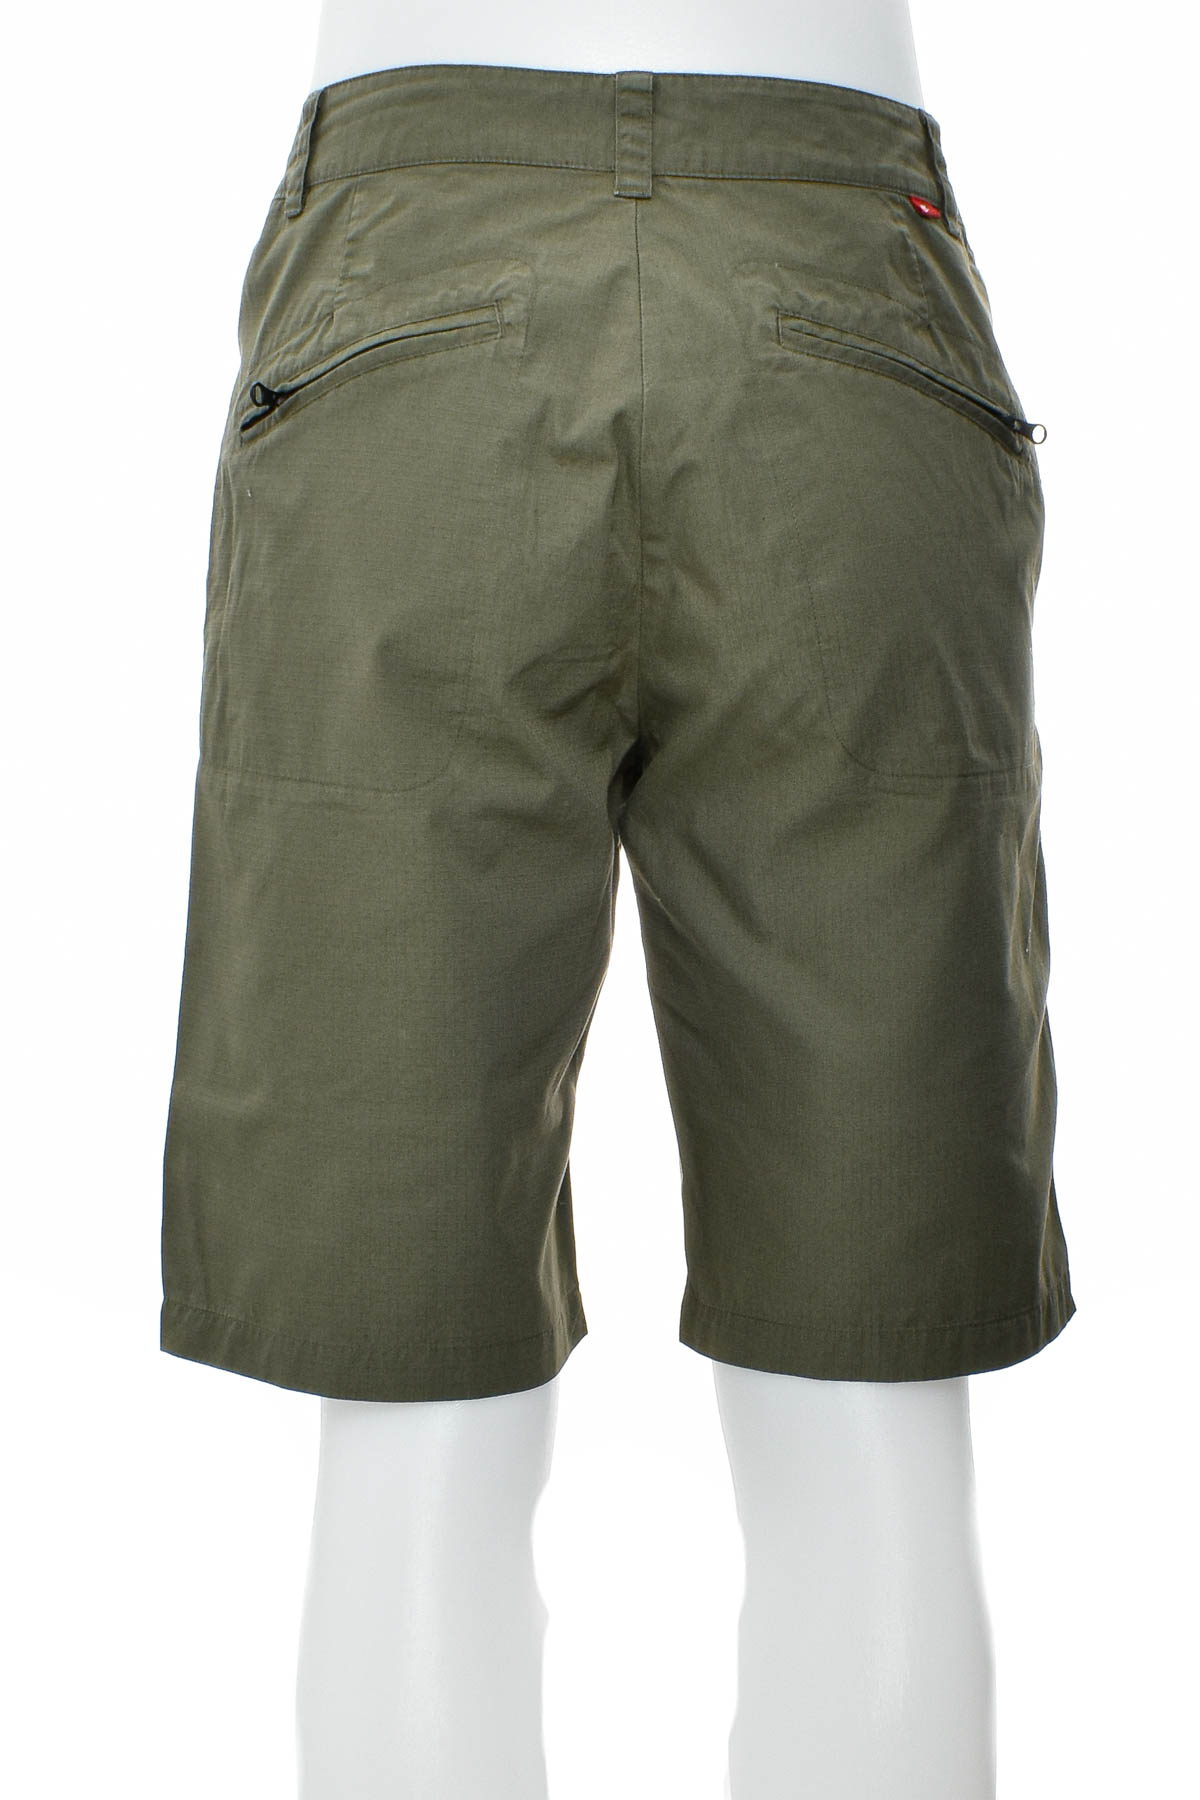 Men's shorts - NIKE - 1